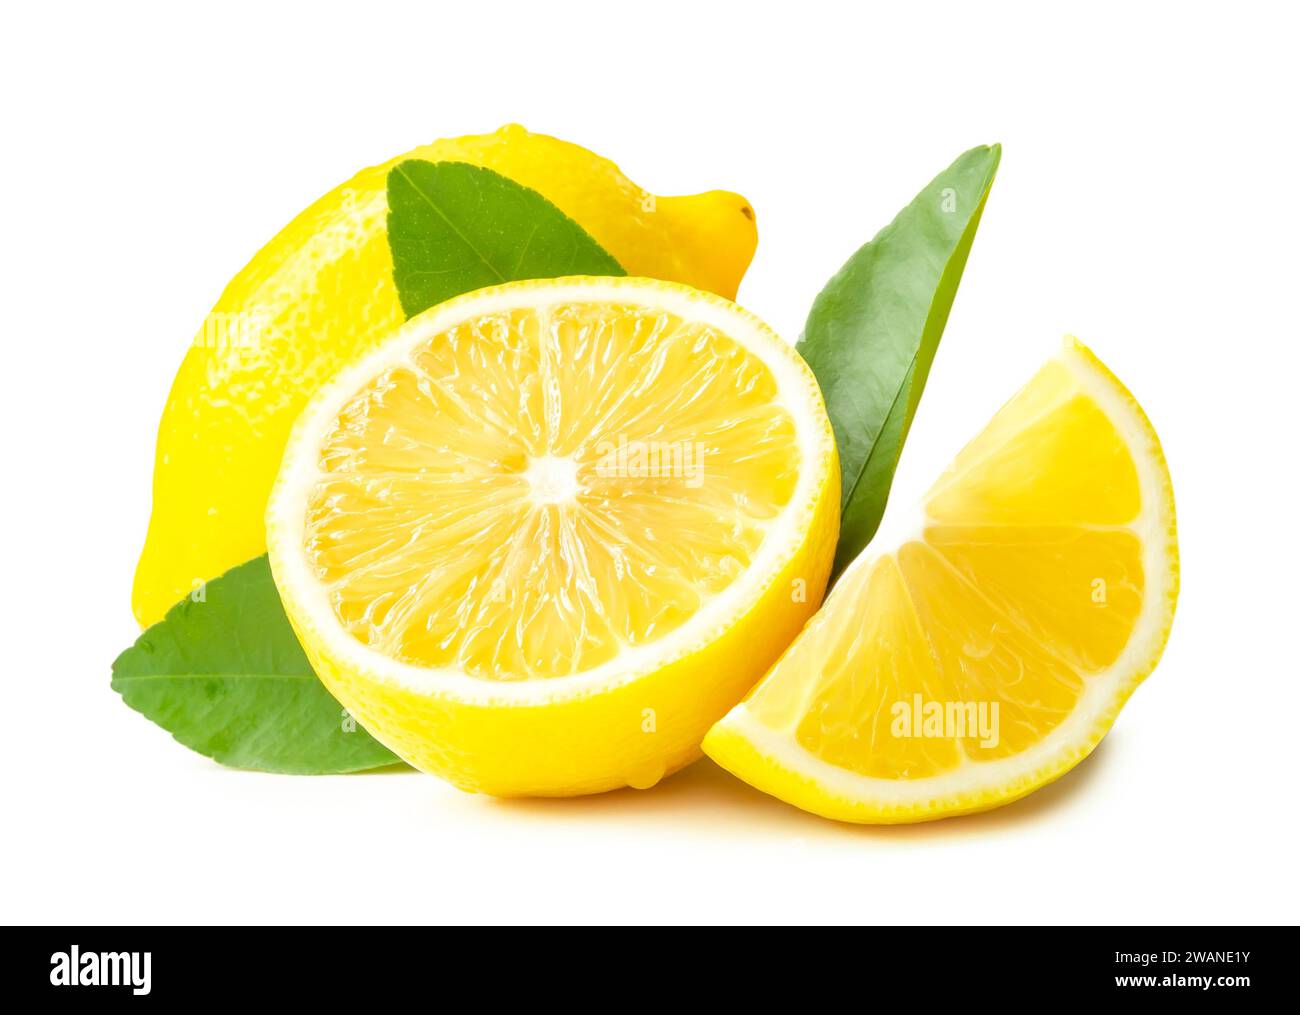 La vista frontale del limone giallo fresco a metà o a fette e foglie è isolata su sfondo bianco con percorso di ritaglio. Foto Stock